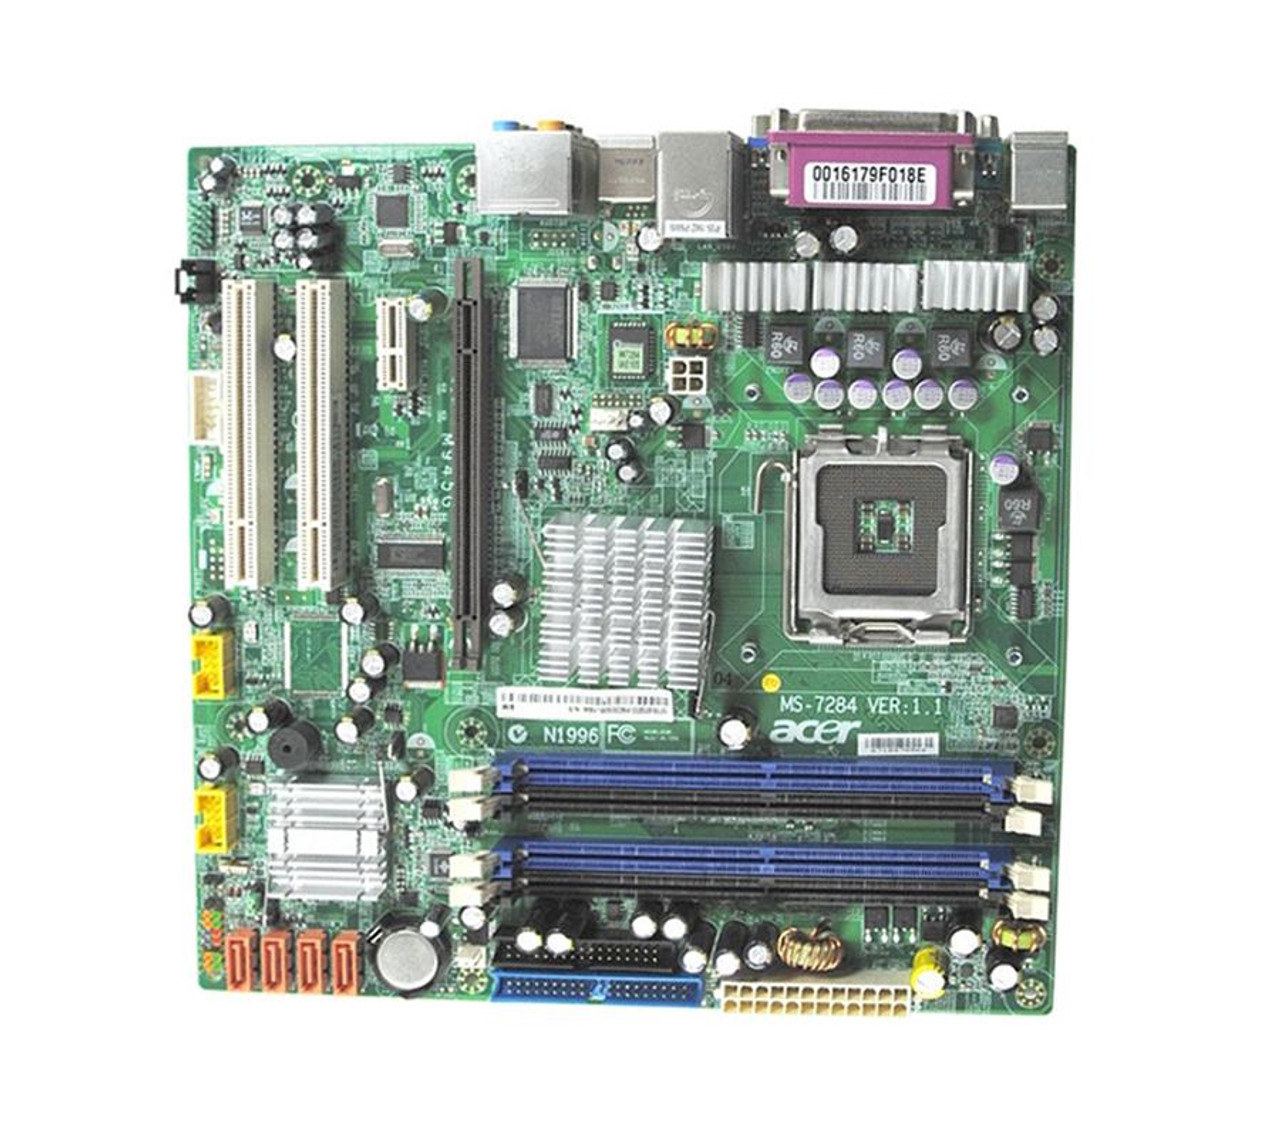 MS-7284 Acer System Board (Motherboard) for Veriton 6800 Desktop (Refurbished)